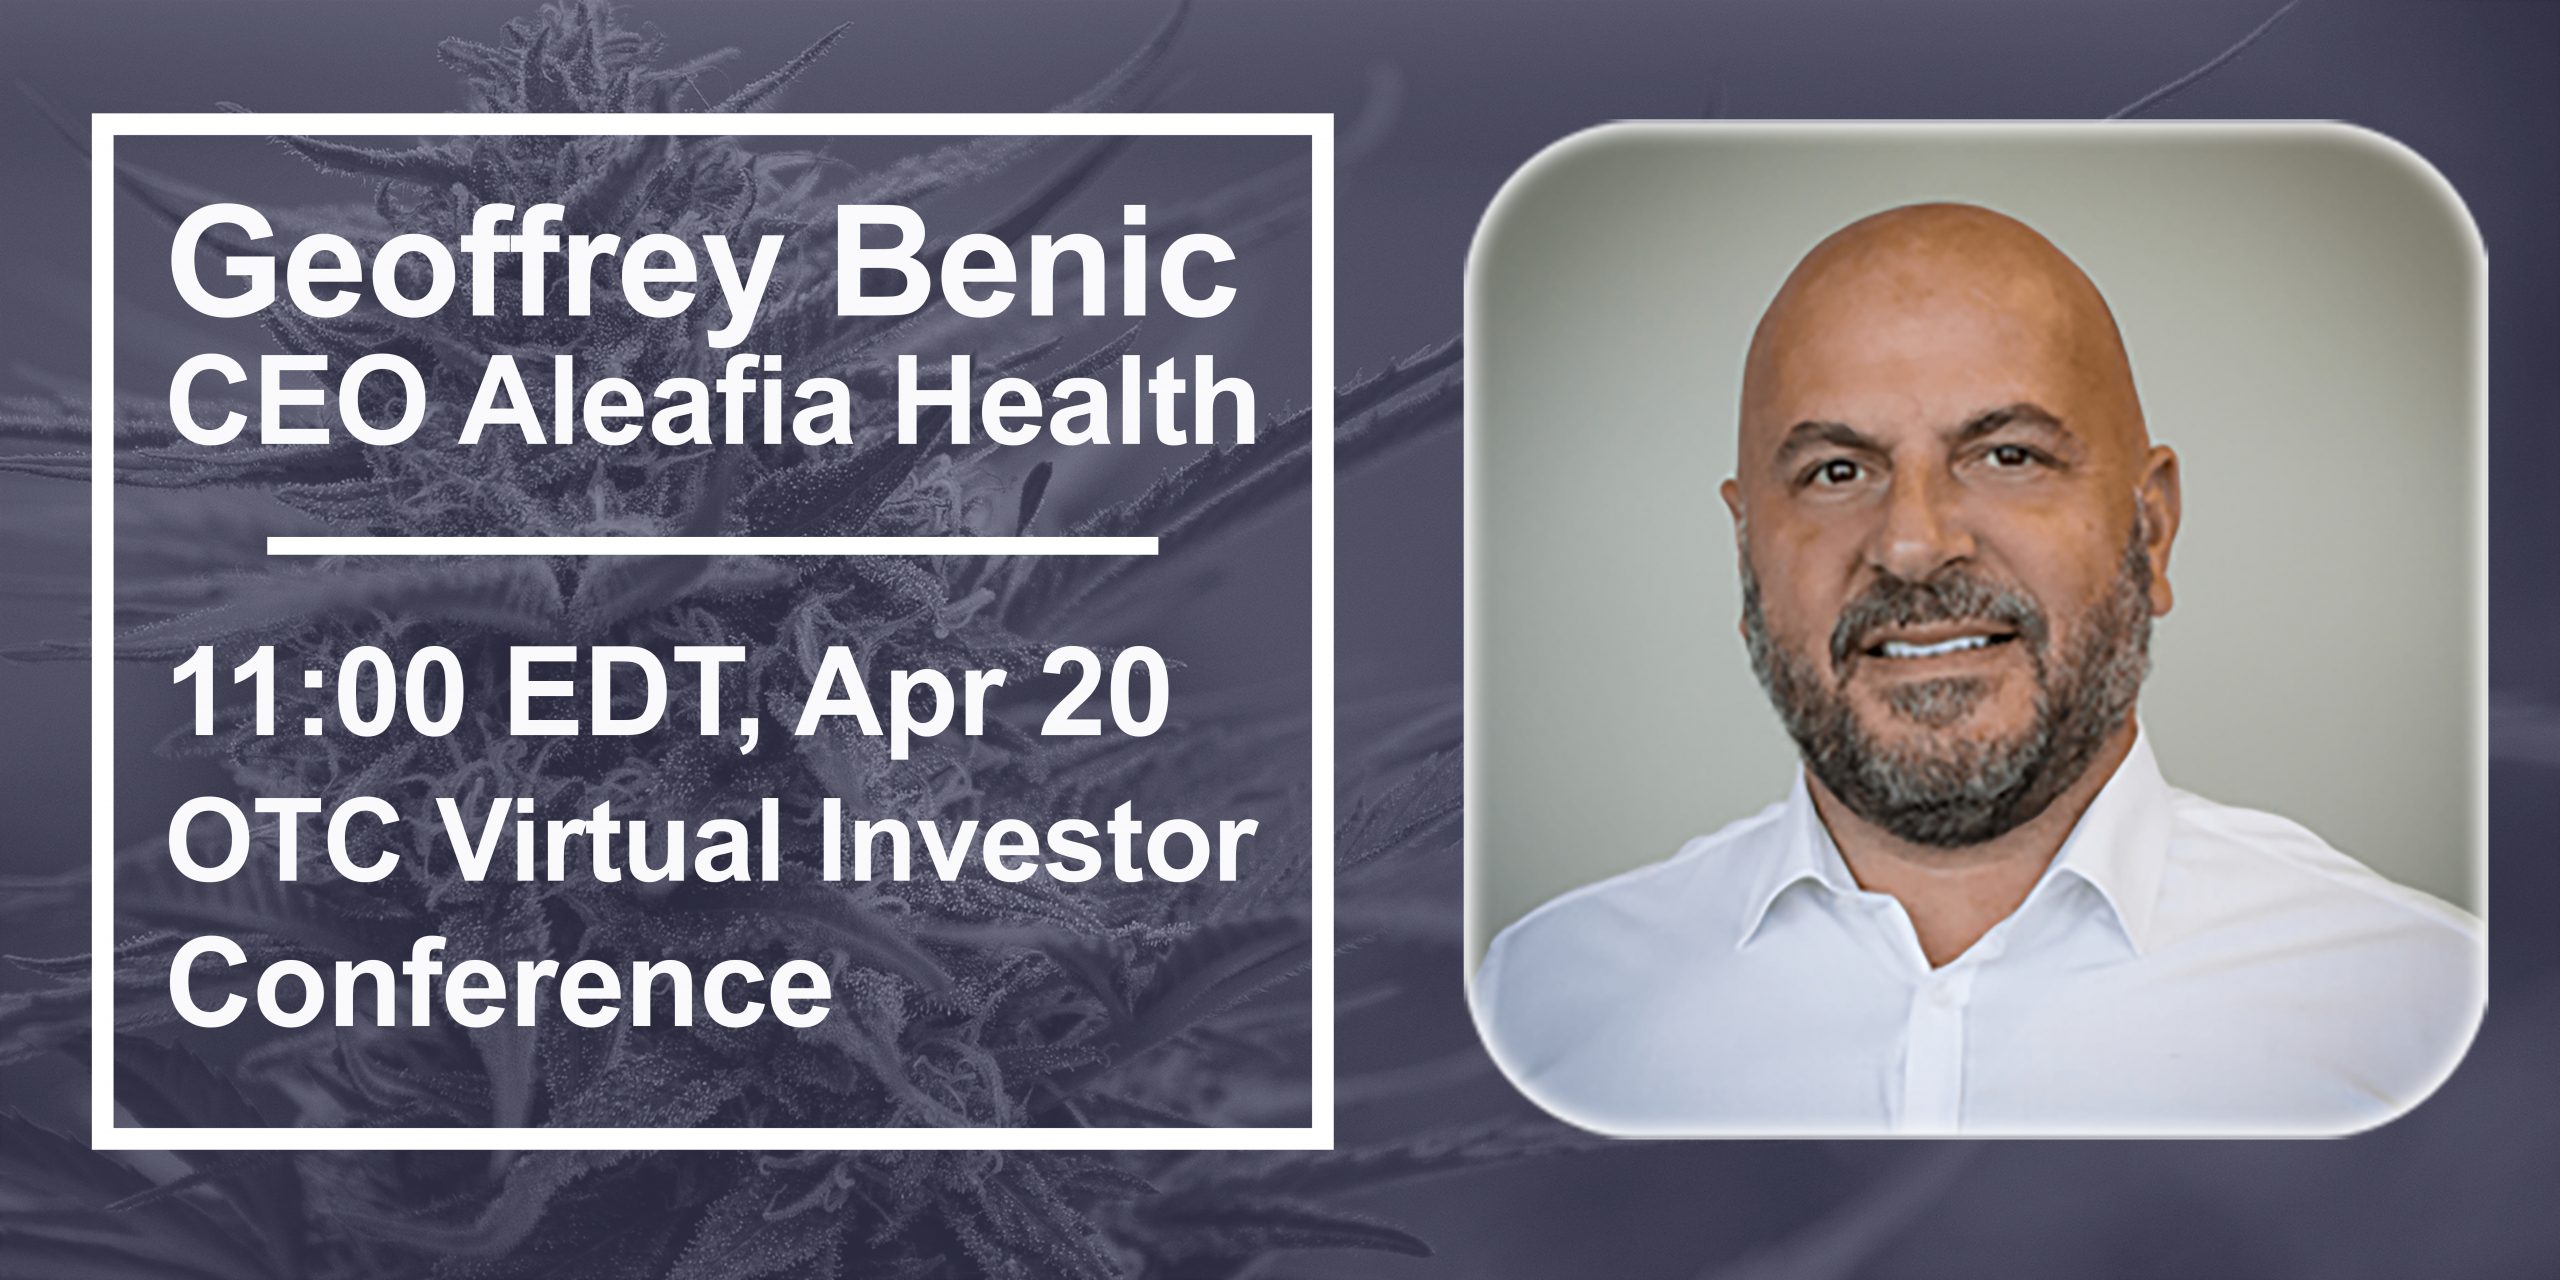 Aleafia Health CEO Geoffrey Benic to Present in Two Investor Conferences